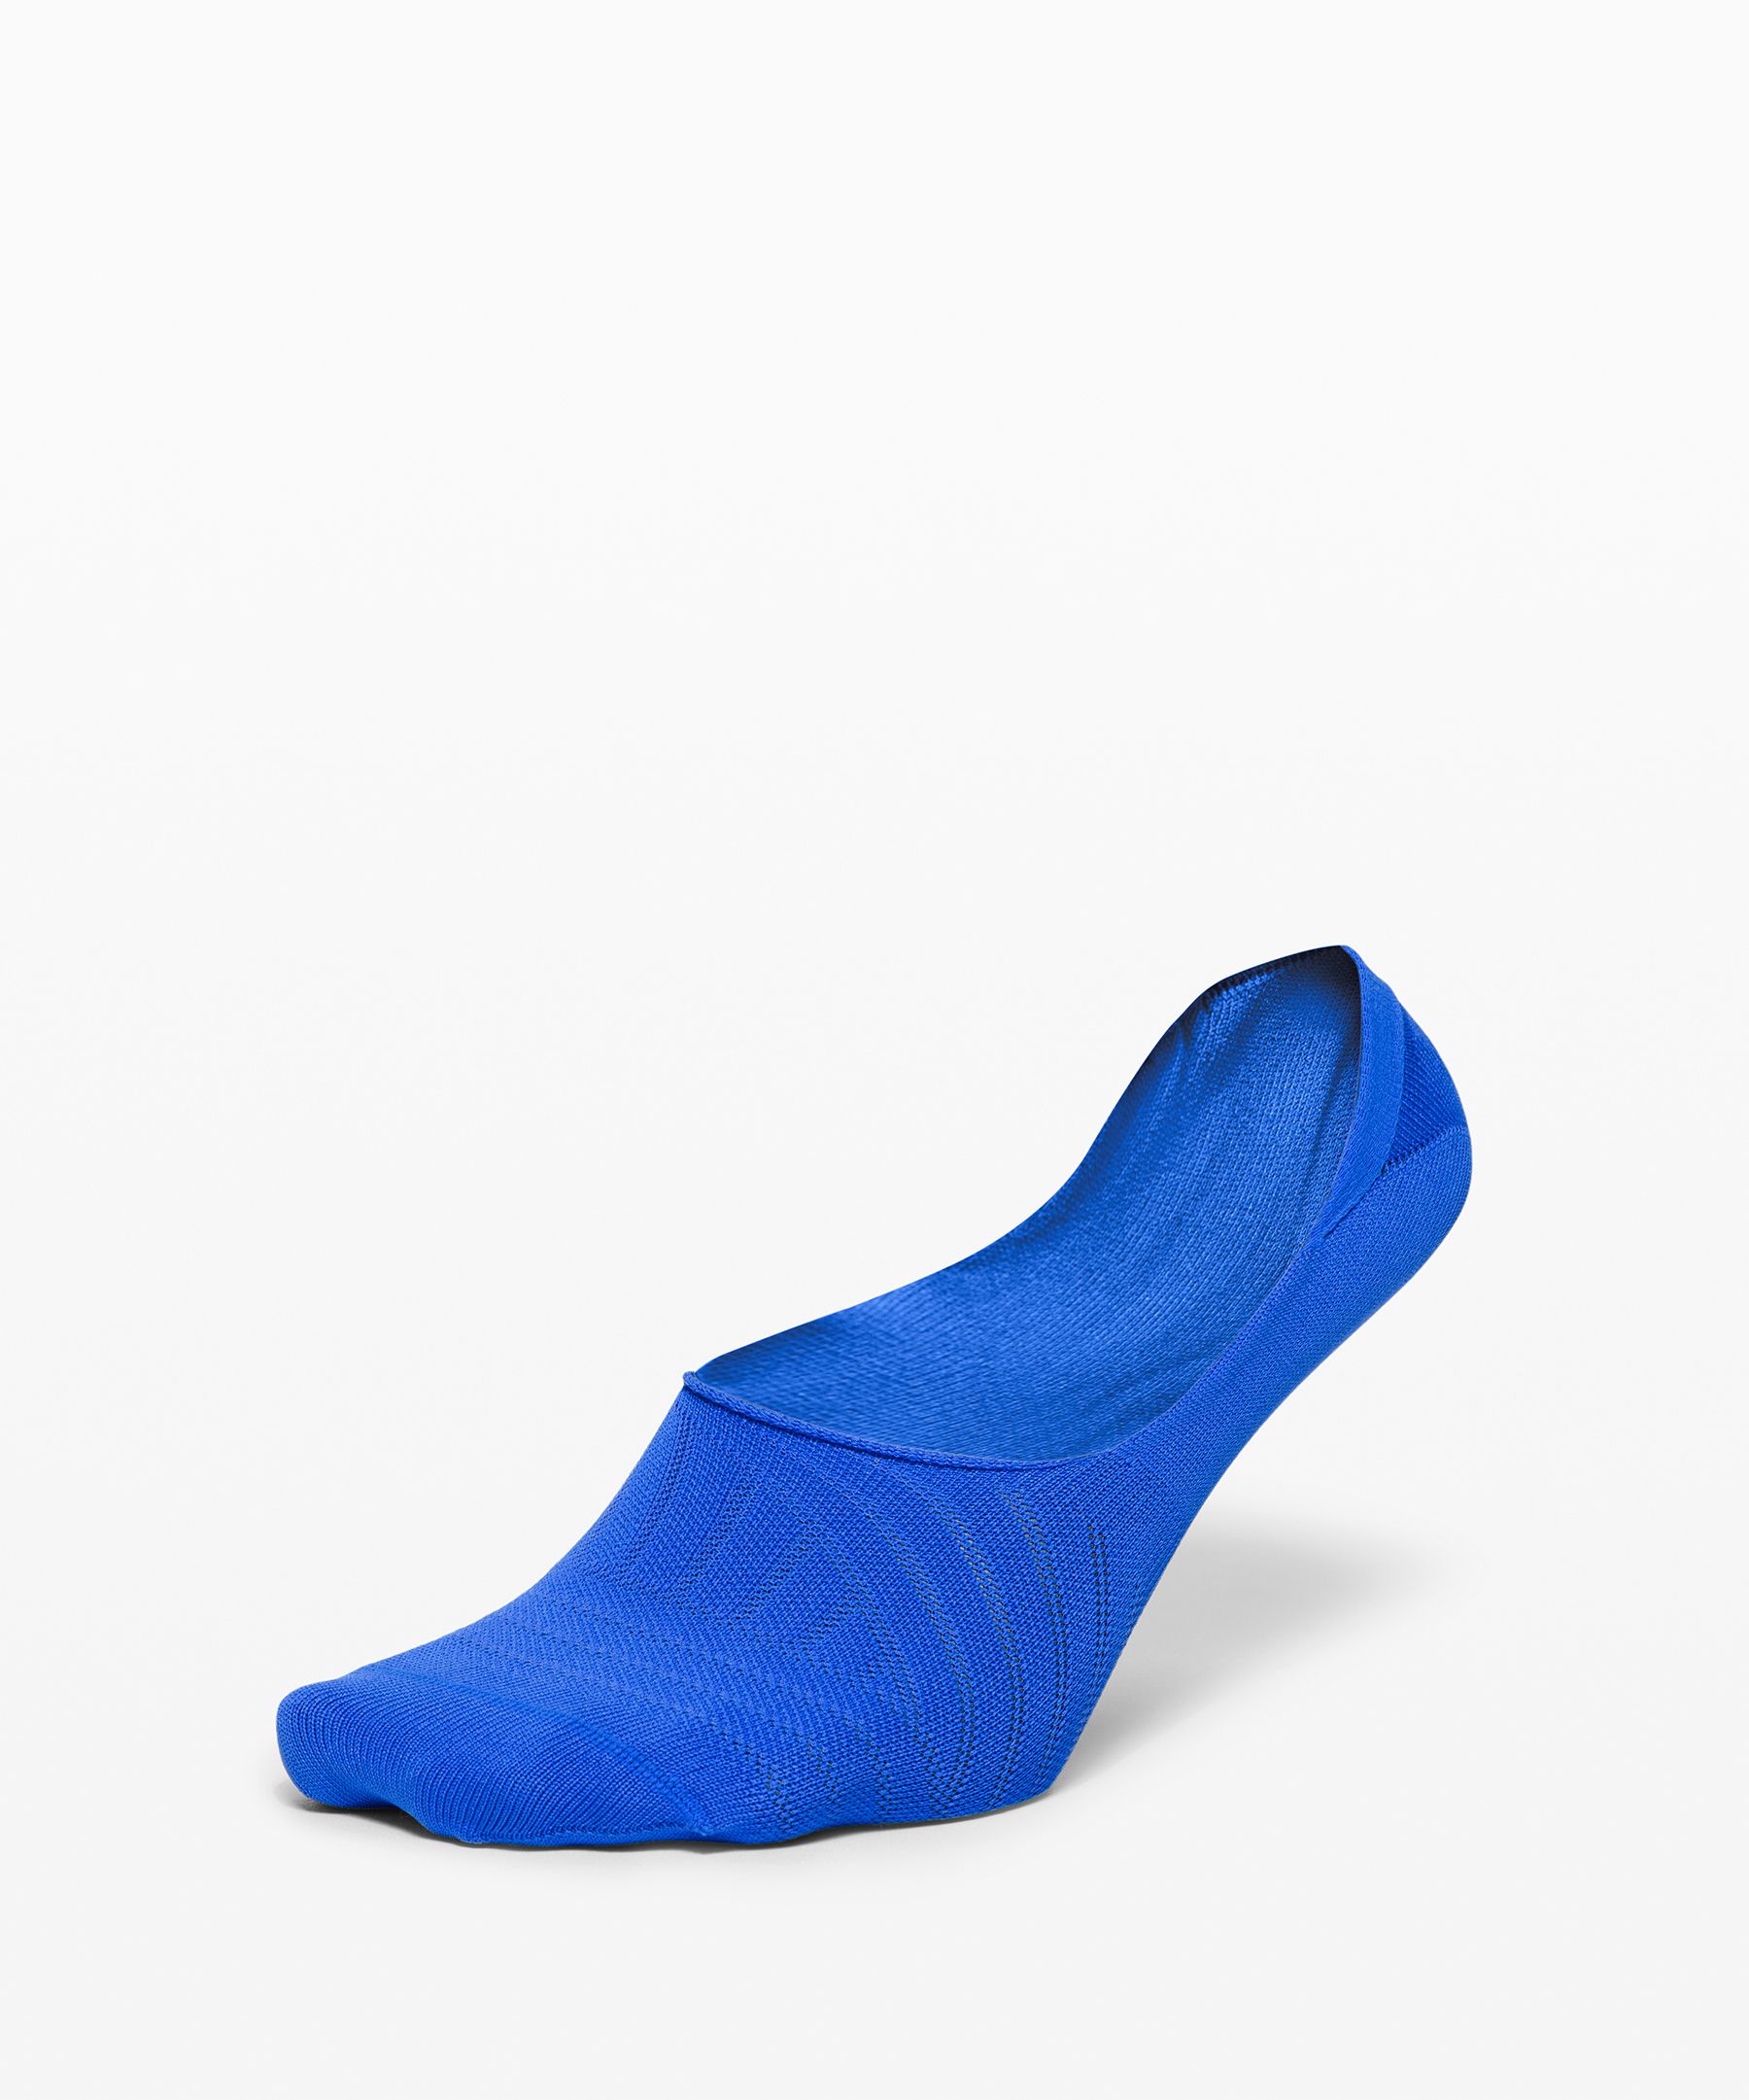 Lululemon Secret Sock In Wild Bluebell